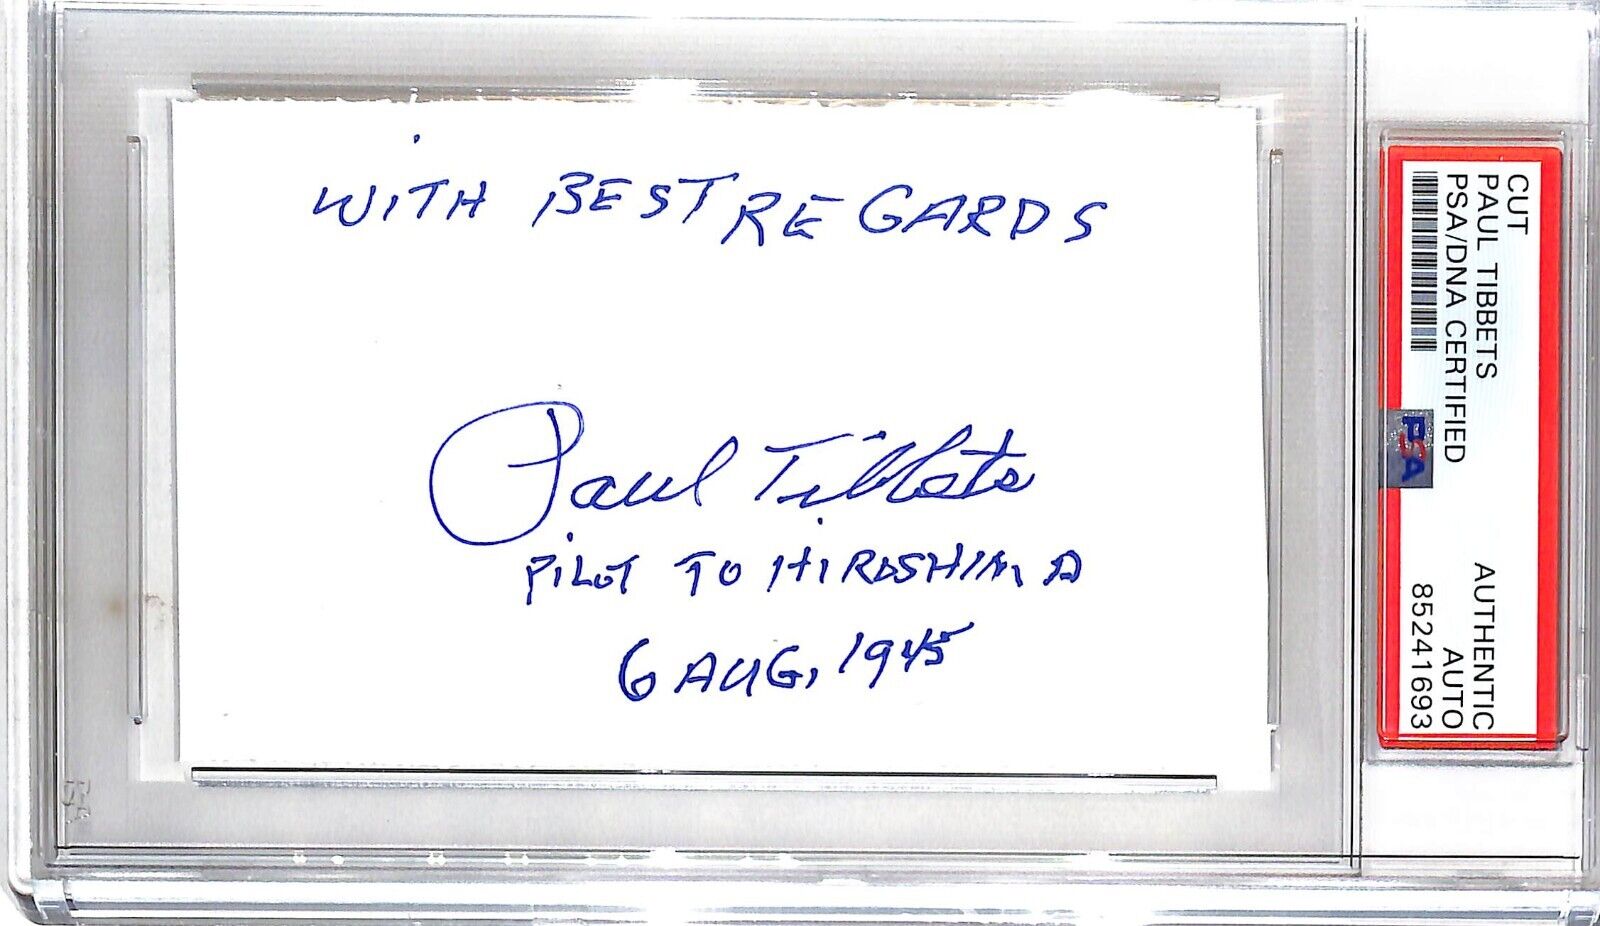 Paul Tibbets Autographed 3x5 Cut 